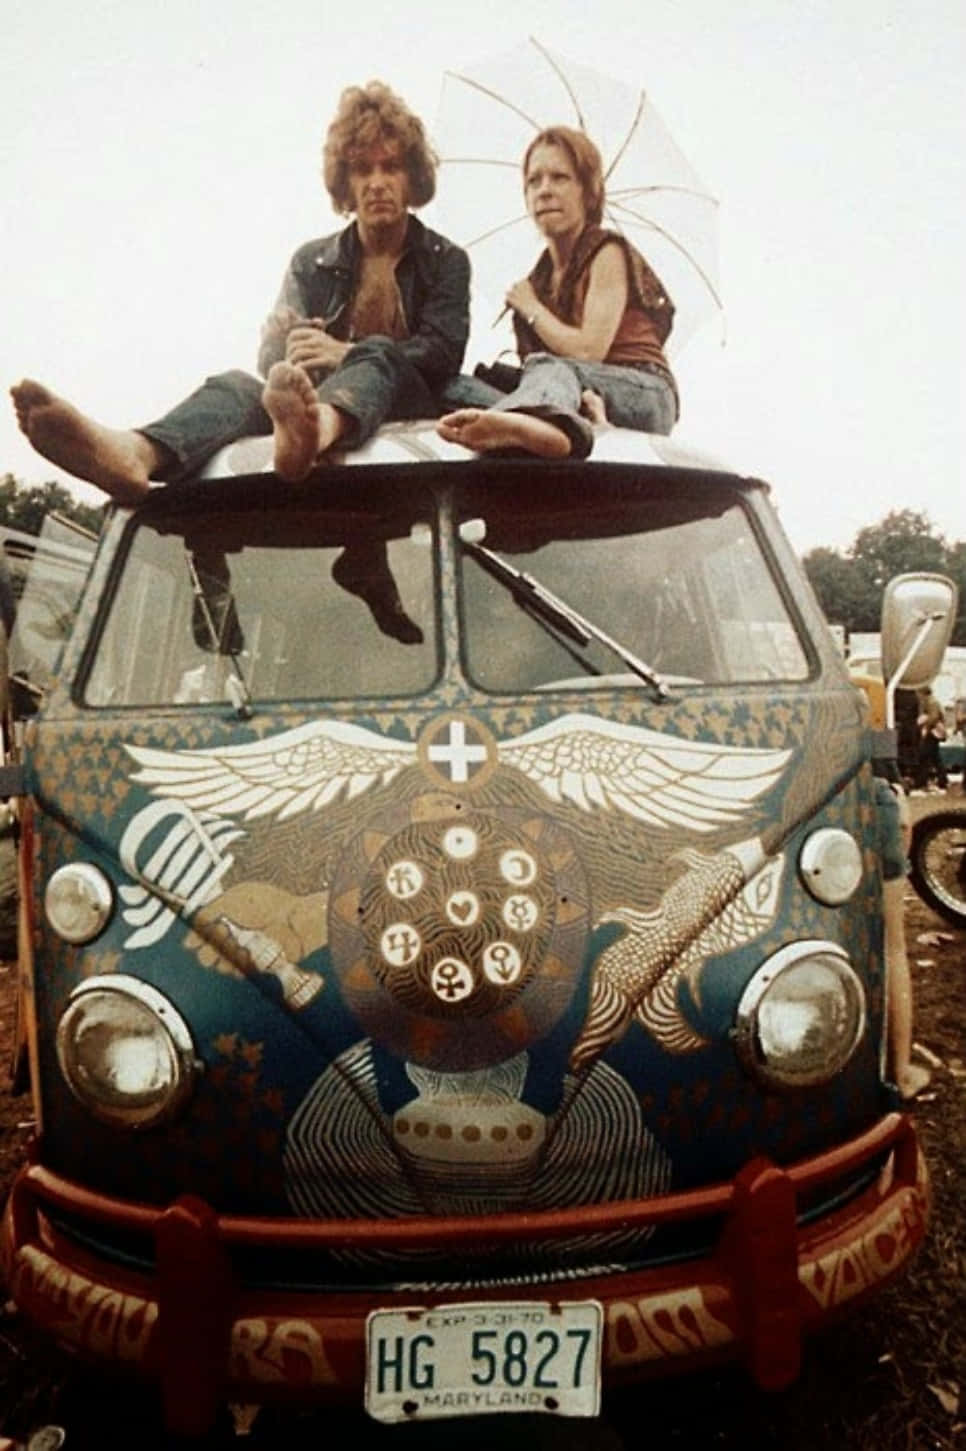 A Peaceful Scene in Woodstock, 1969